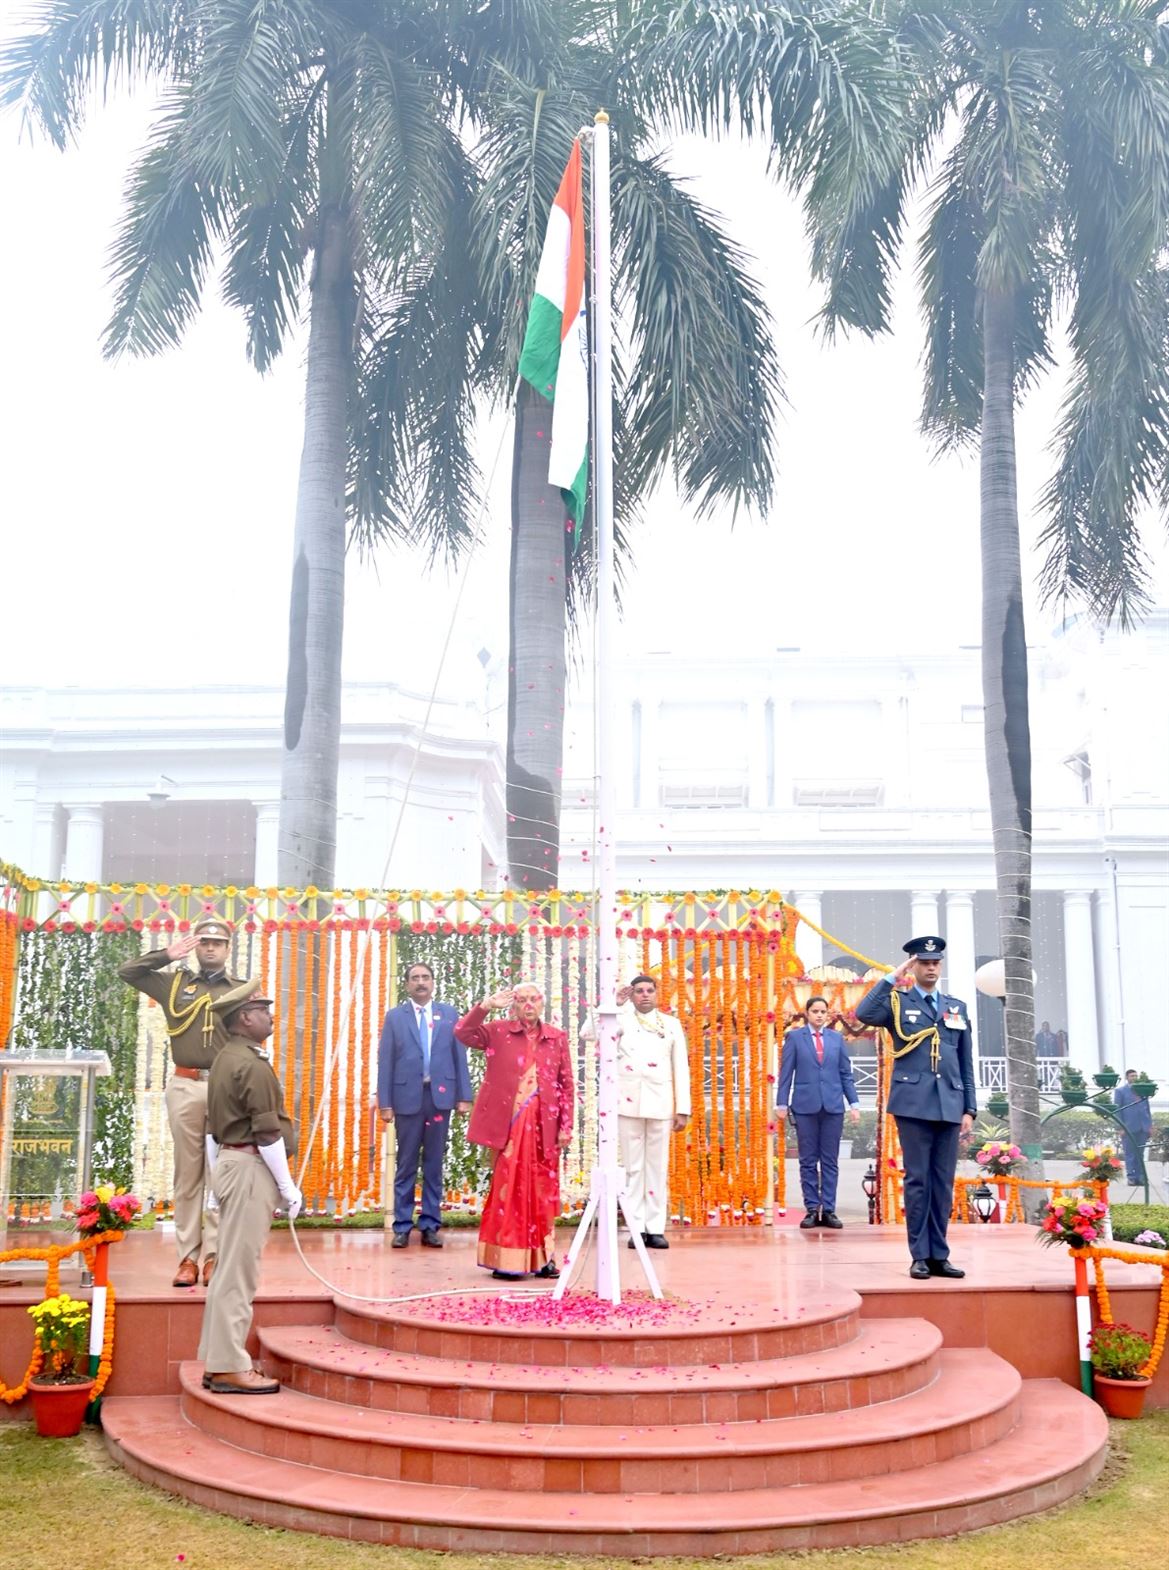 Governor hoisted the National Flag at Raj Bhavan/राजभवन में राज्यपाल द्वारा किया गया ध्वजारोहण